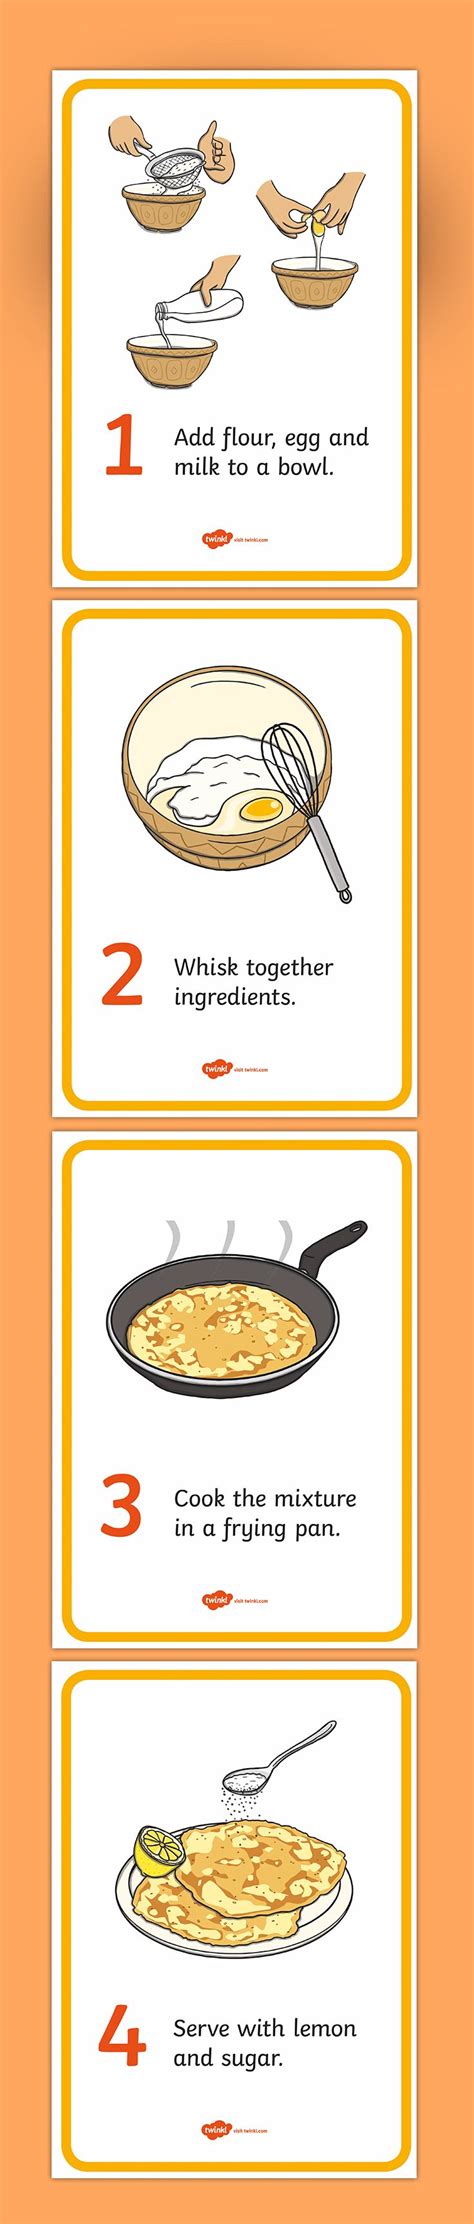 Pancake Recipe Cards How To Make Pancakes Recipe Cards Food Writing